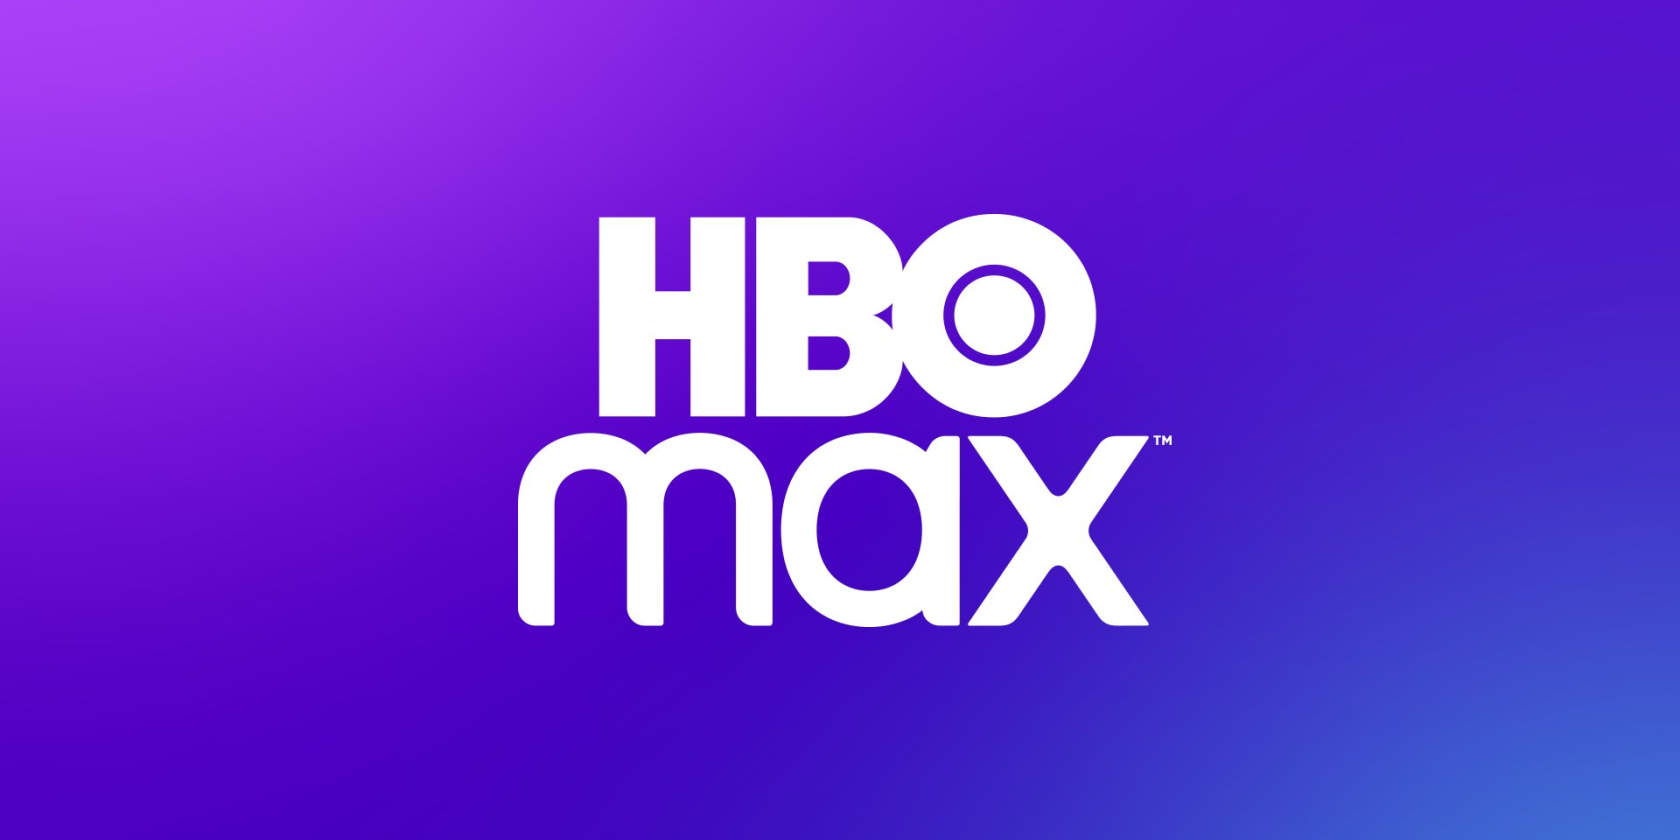 Beliebte Marvel-Filme jetzt auf HBO Max Titel